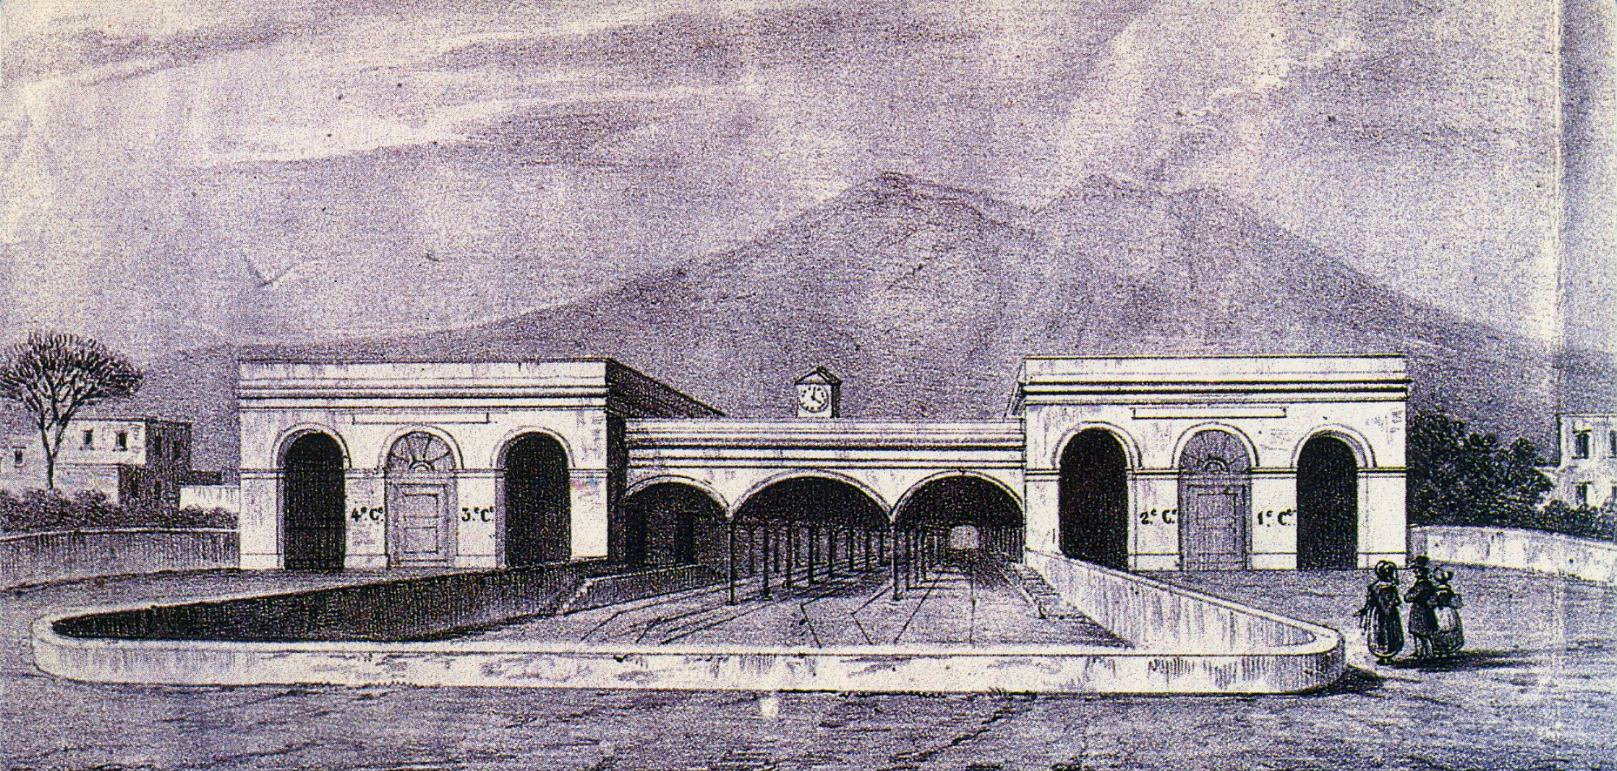 Stazione di Napoli in fase di completamento